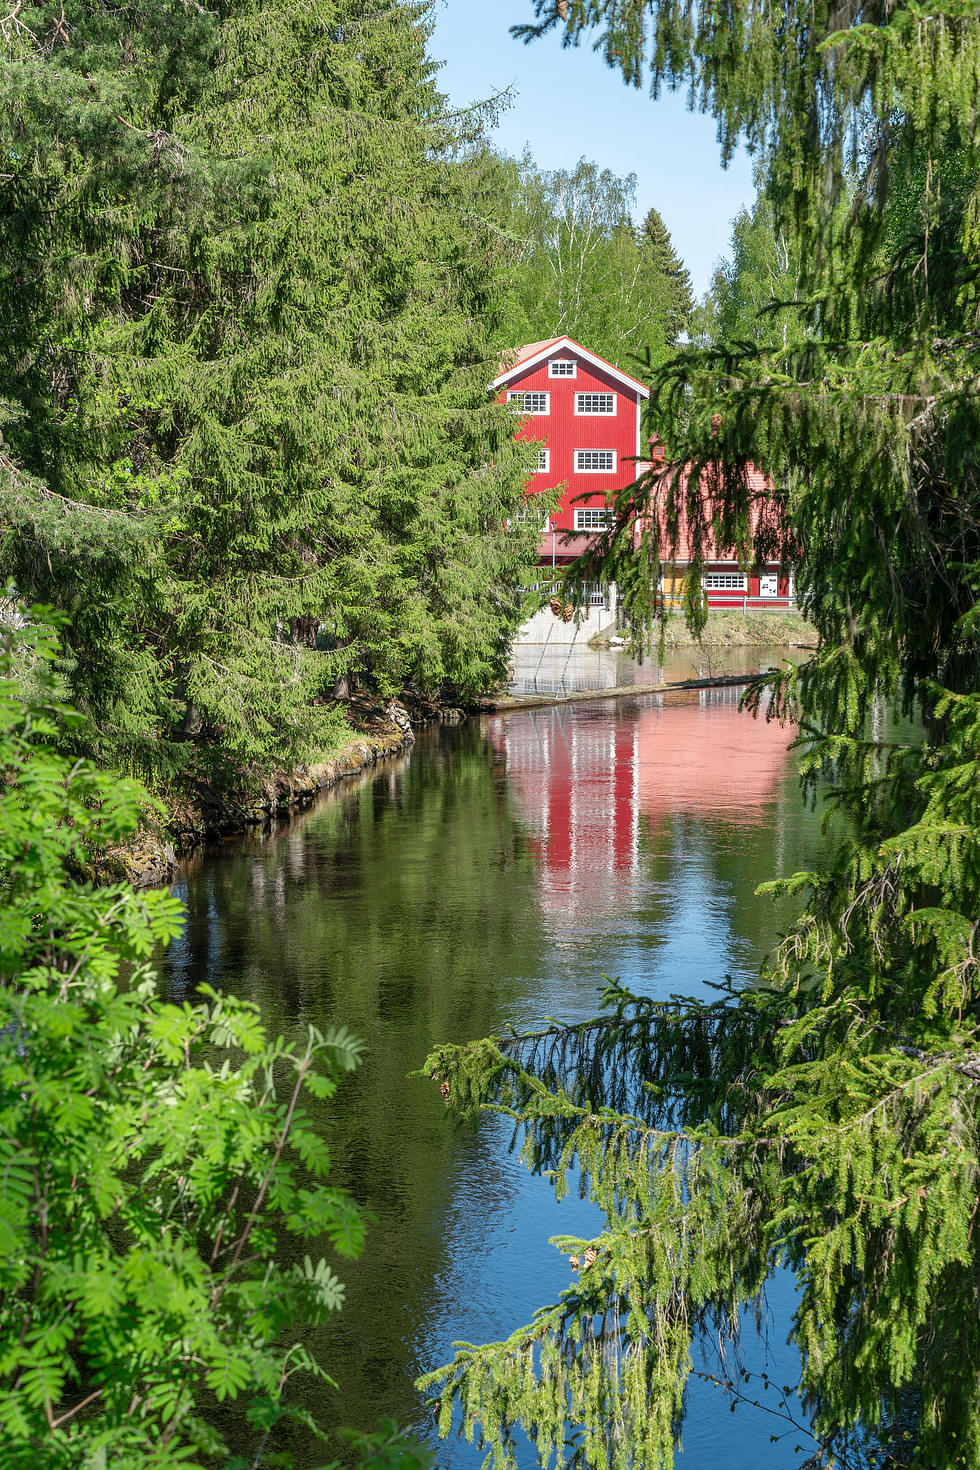 Mustosen kanavan tekeminen jäi 1870-luvulla kesken, mutta Vanhalla Puhoksella on oma kanavansa.